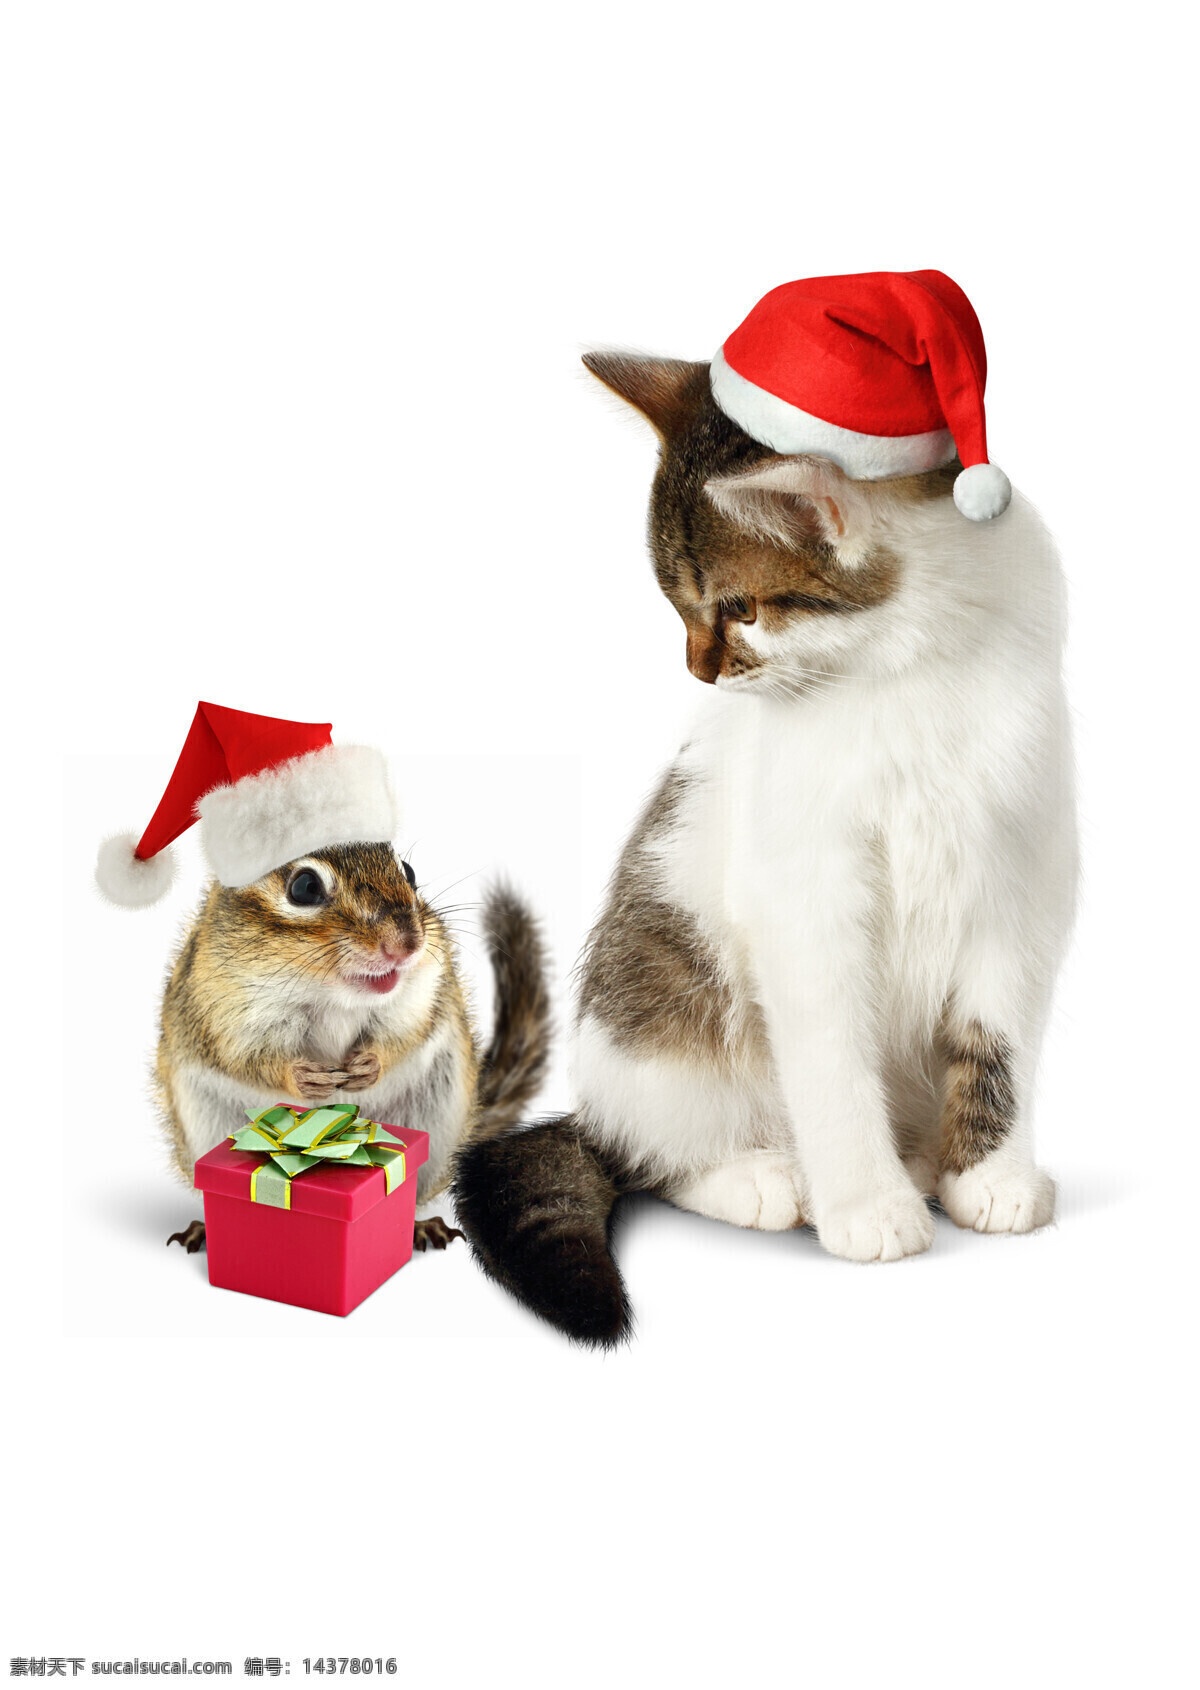 礼物 盒 圣诞 小猫 可爱猫 宠物猫 猫咪 动物 动物世界 猫咪图片 生物世界